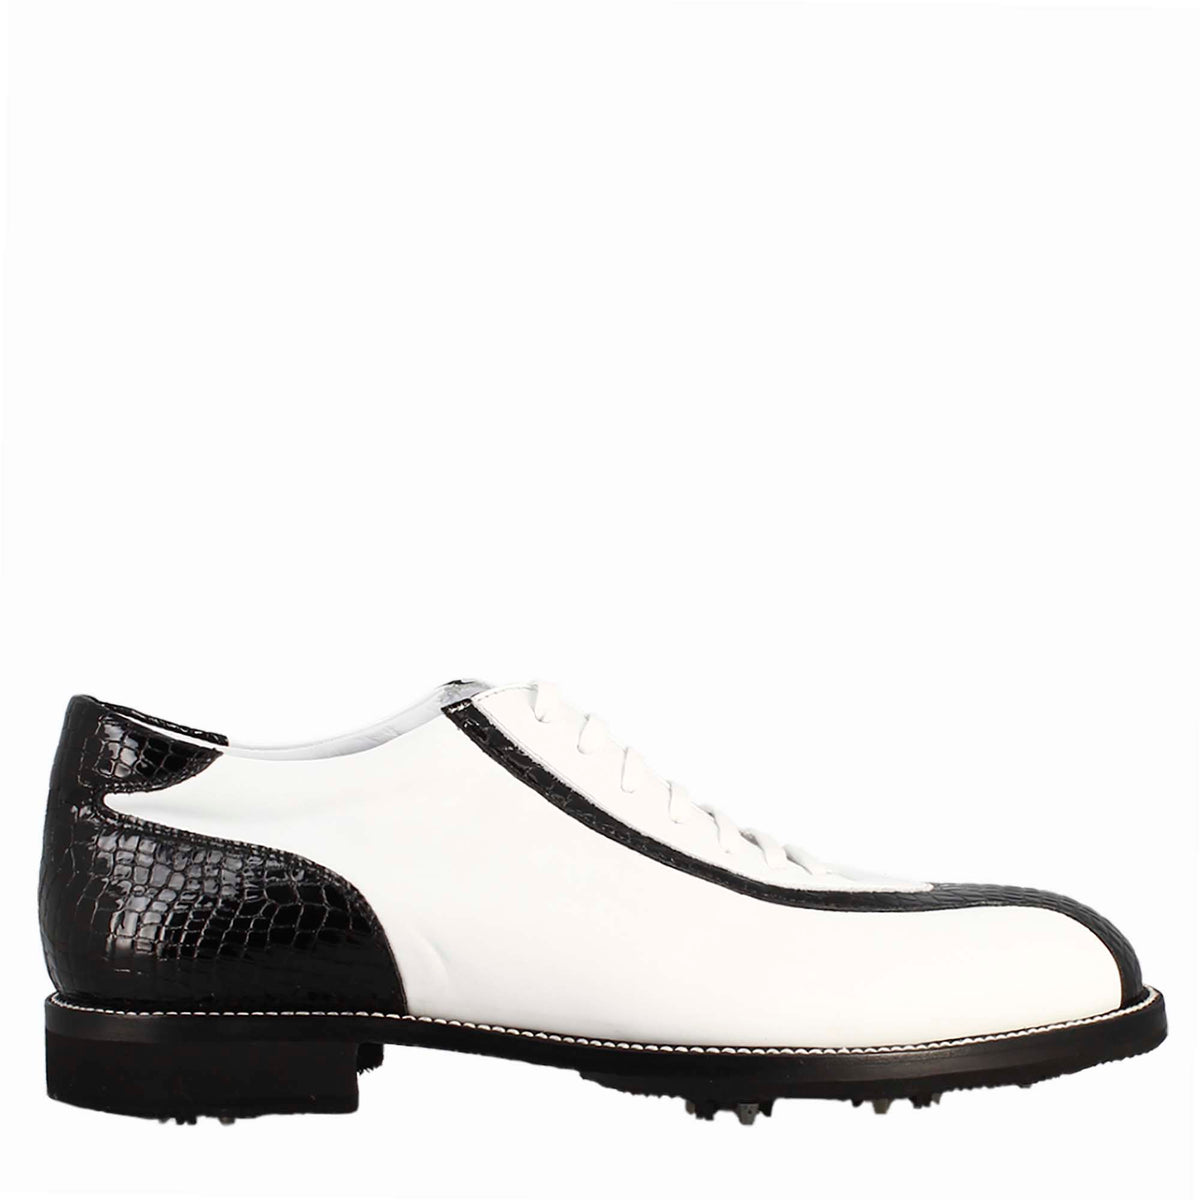 Handgefertigte Damen-Golfschuhe aus weißem Leder und schwarzen Kokosnuss-Details